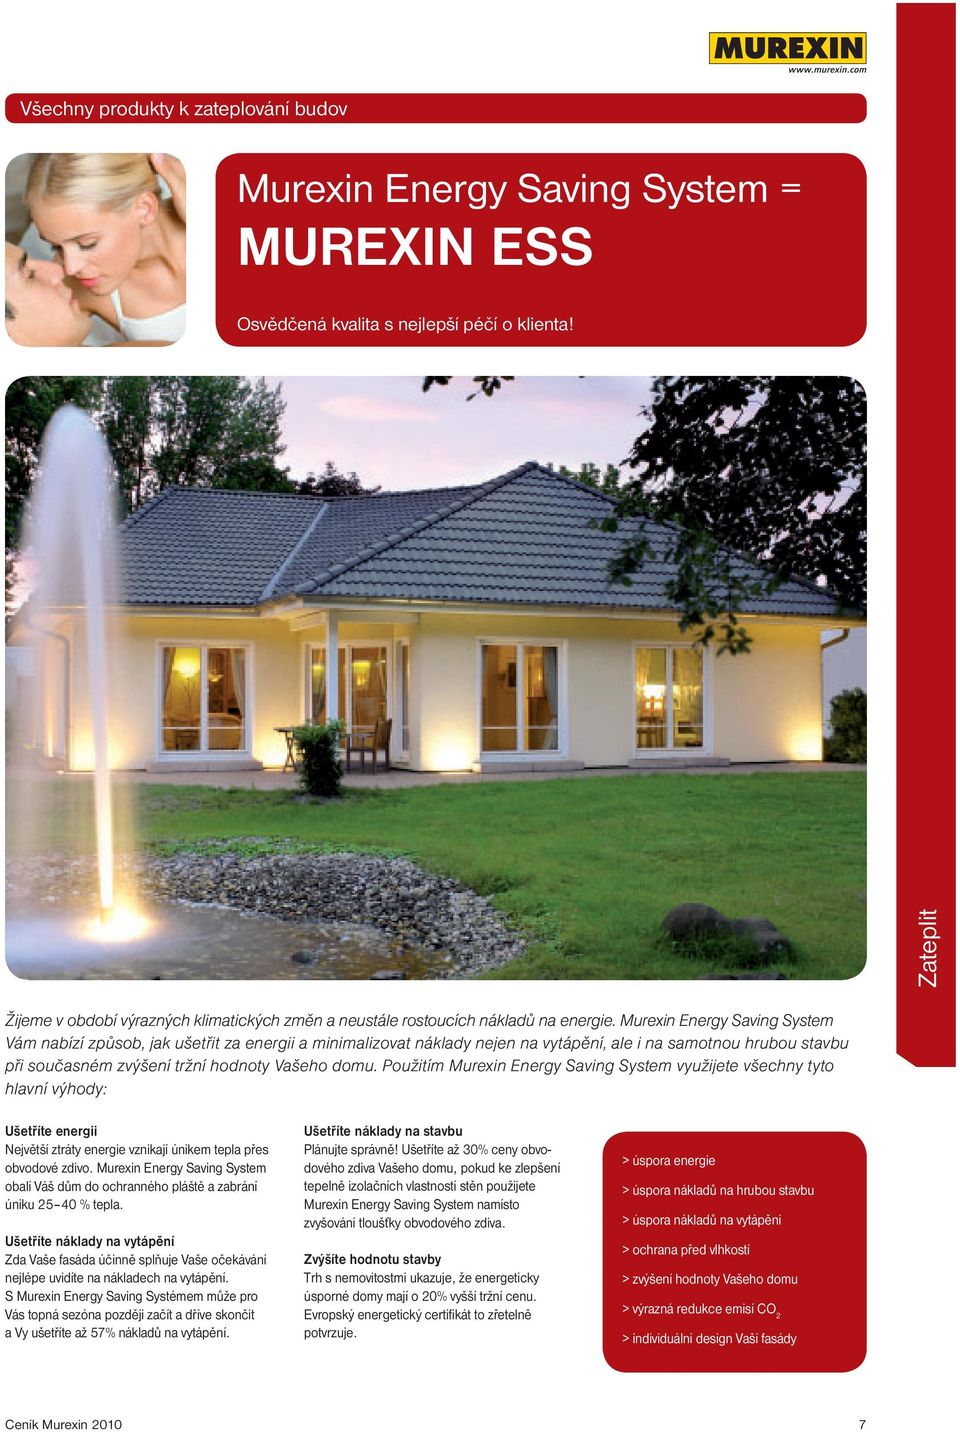 Murexin Energy Saving System Vám nabízí způsob, jak ušetřit za energii a minimalizovat náklady nejen na vytápění, ale i na samotnou hrubou stavbu při současném zvýšení tržní hodnoty Vašeho domu.